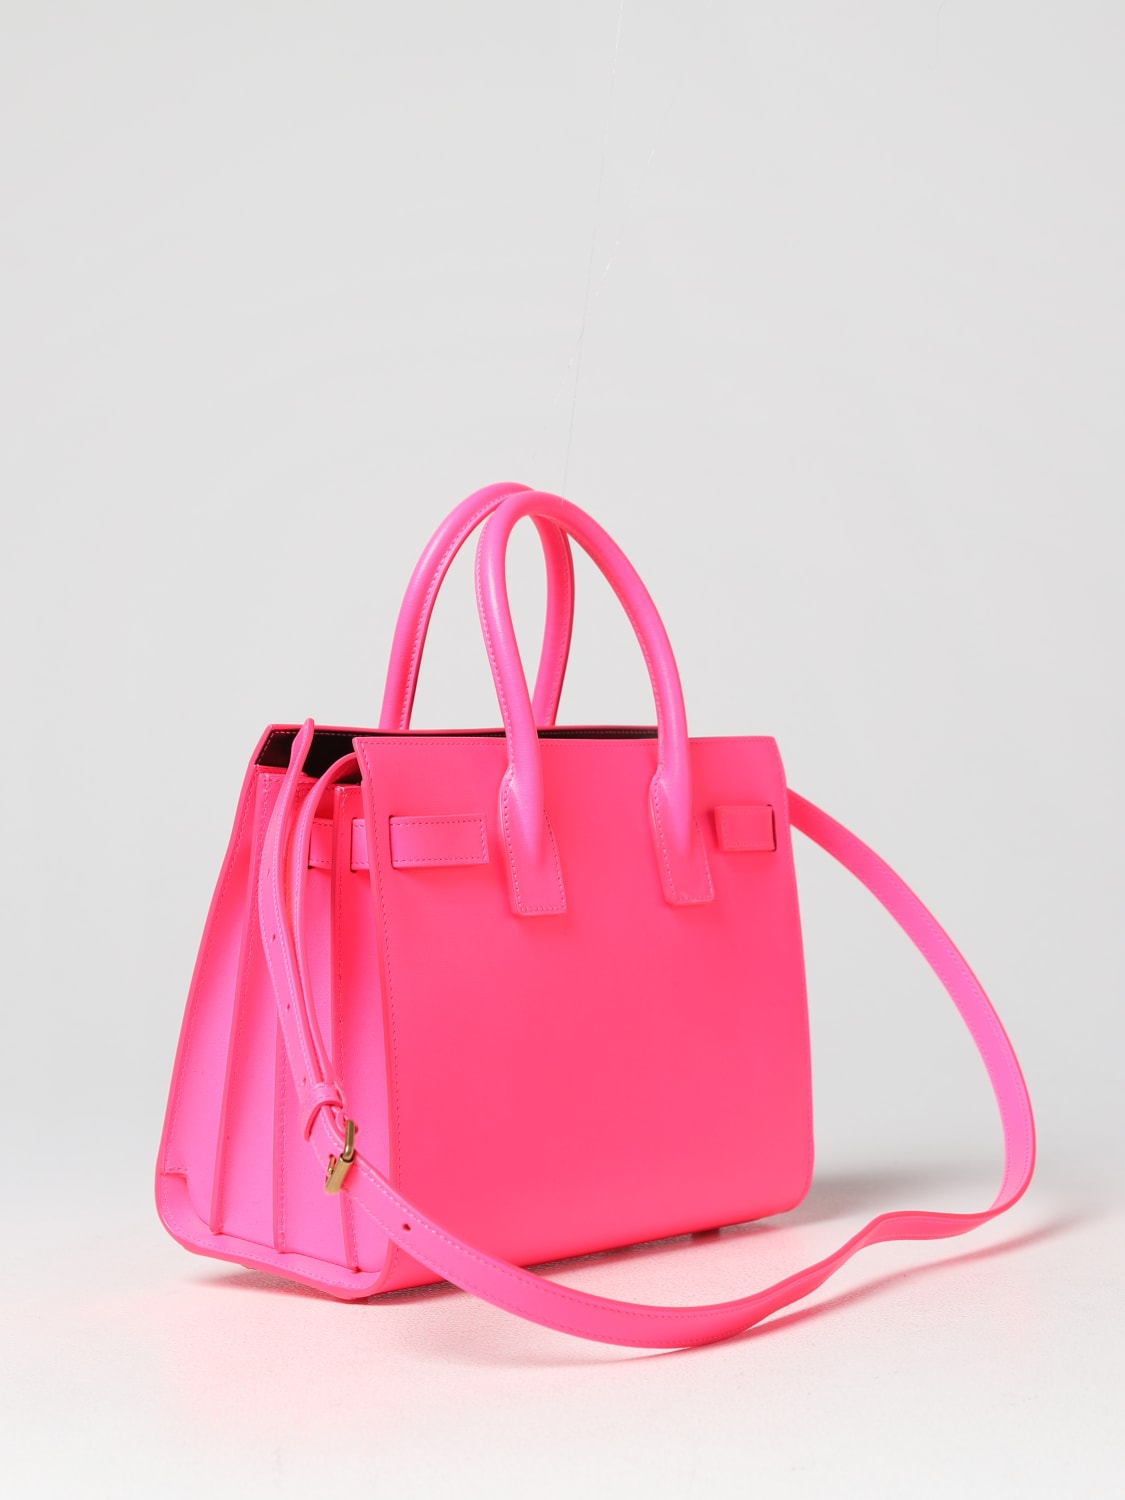 SAINT LAURENT: Sac de Jour leather bag - Pink  Saint Laurent handbag  421863AABMK online at